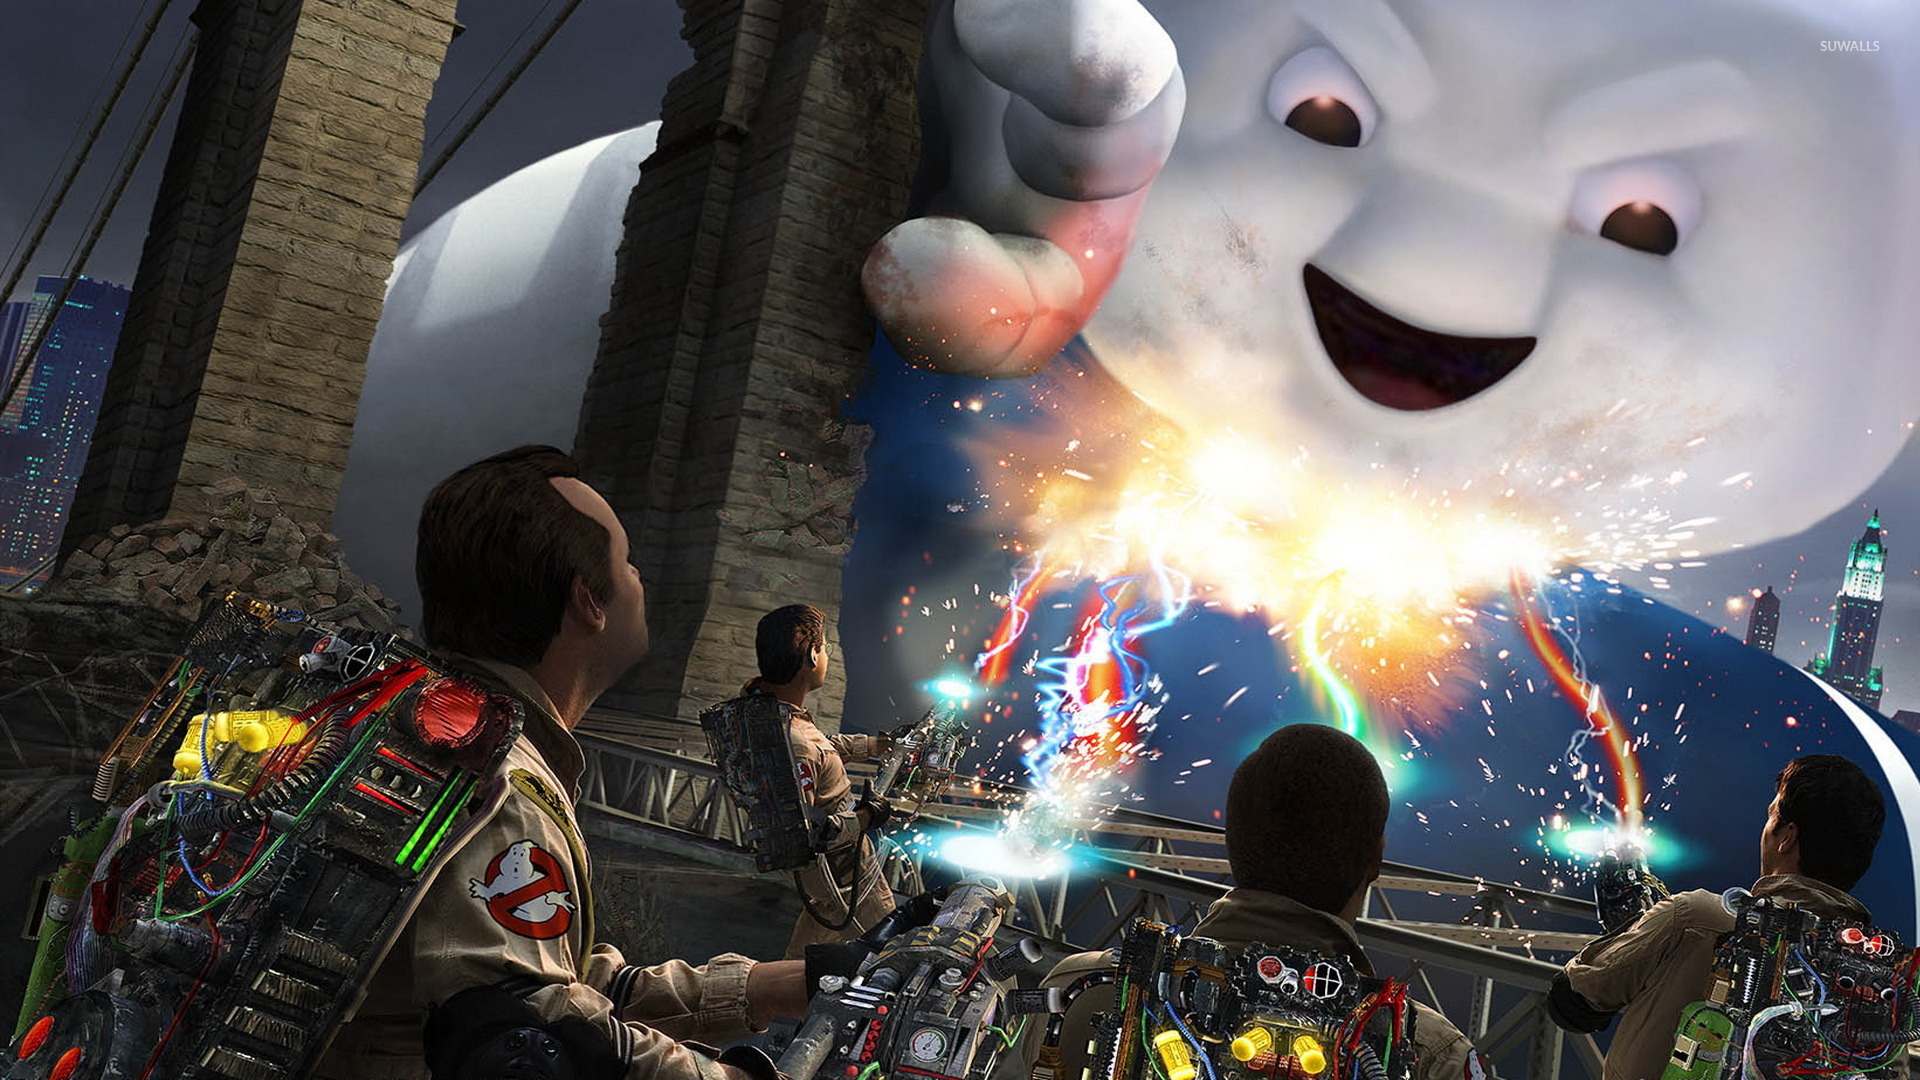 شایعه: قسمت جدید بازی Ghostbusters در دست ساخت است